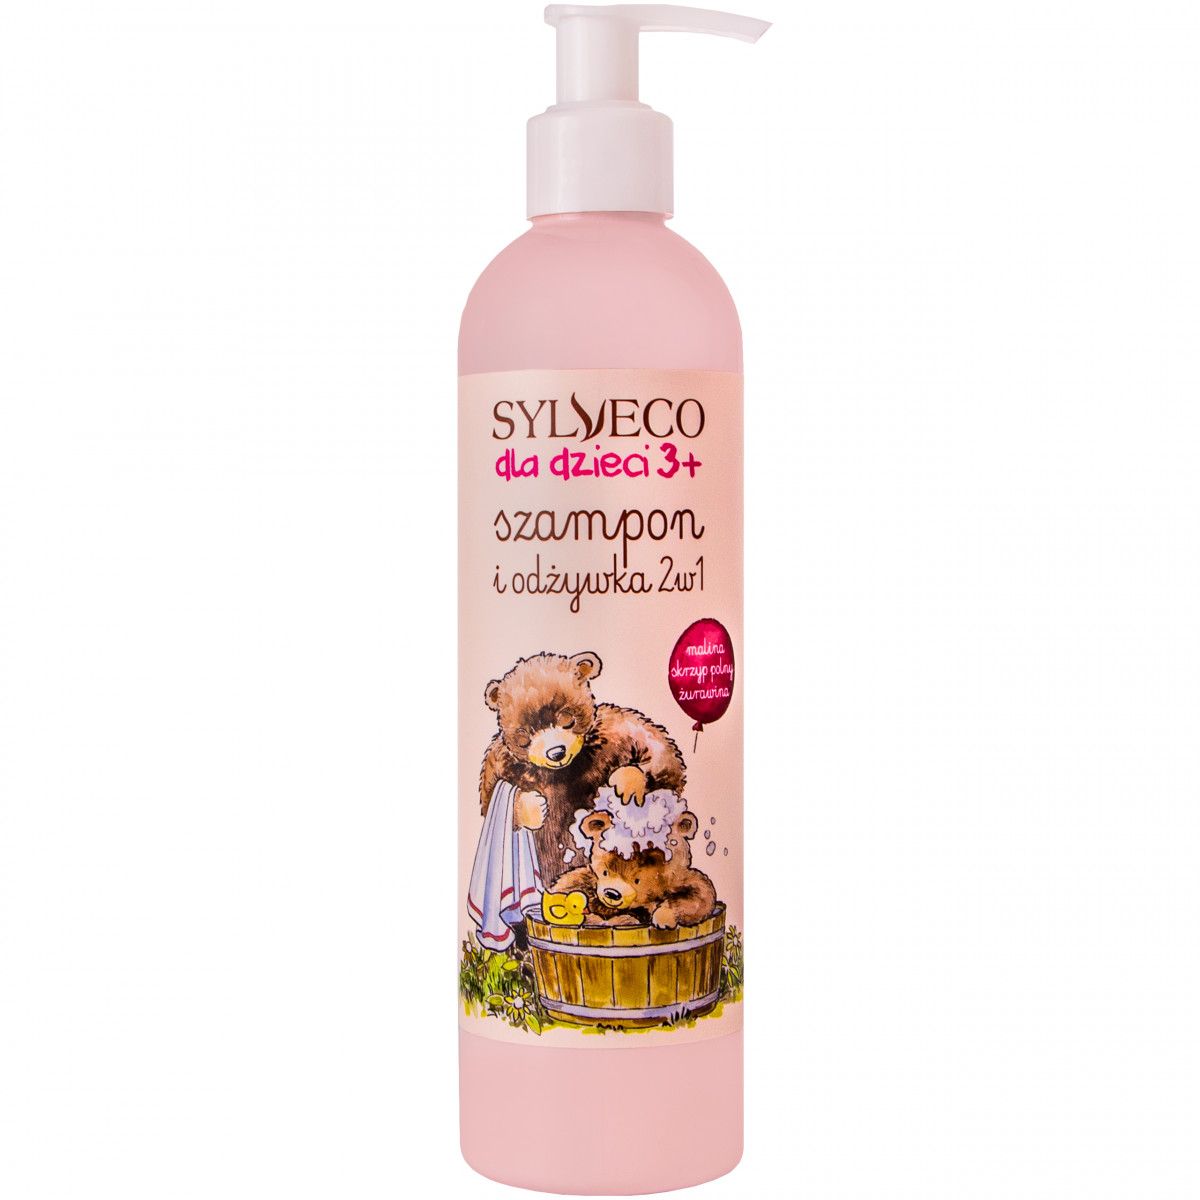 szampon sylveco przeciwlupiezowy opinie